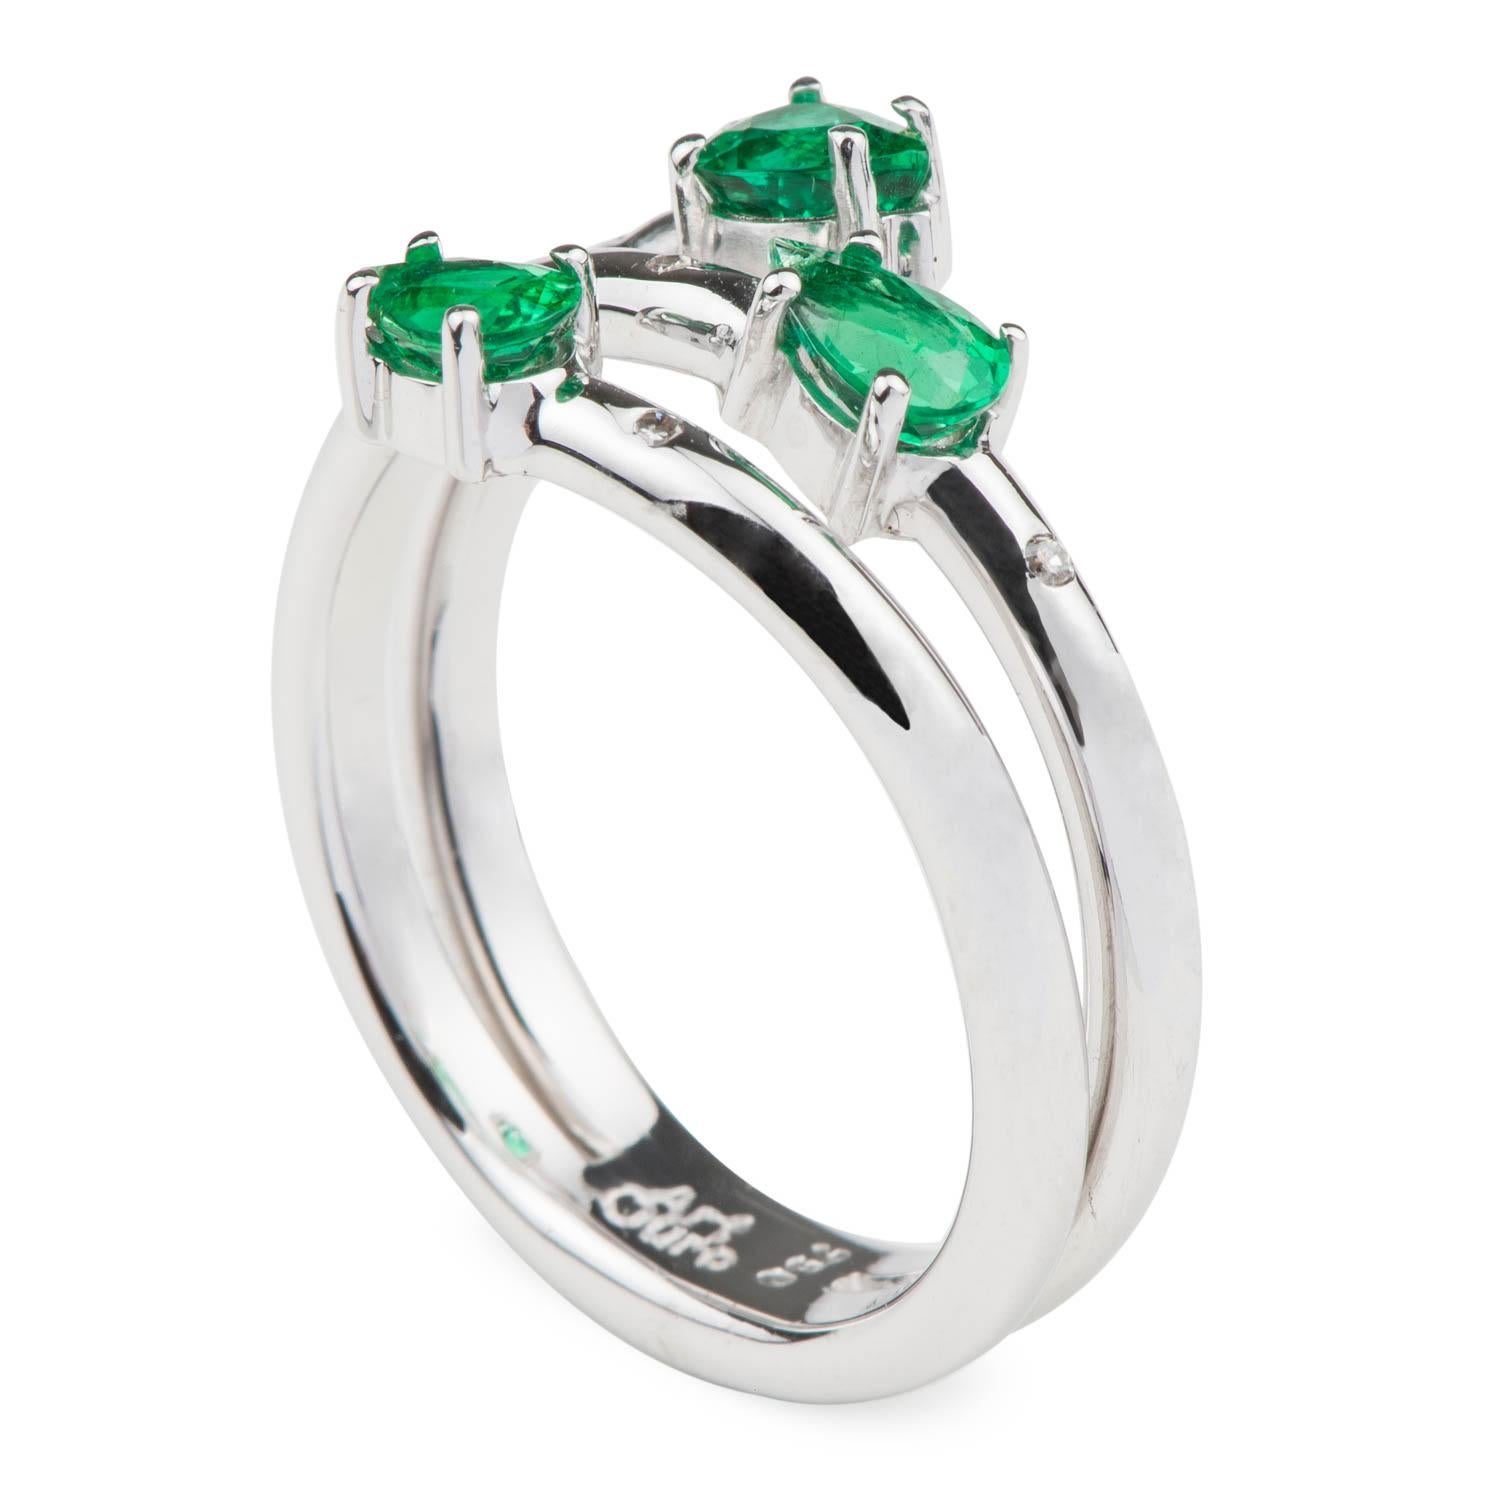 Der ArtOuro Emerald Ring wurde mit einem wunderschönen Edelstein (0,77cts) und massivem 18k Weißgold (6,48grs) gefertigt. Wir haben auch international eingestufte VS2-Diamanten mit einem Gesamtgewicht von 0,02cts verwendet.

Es ist ein einzigartiges